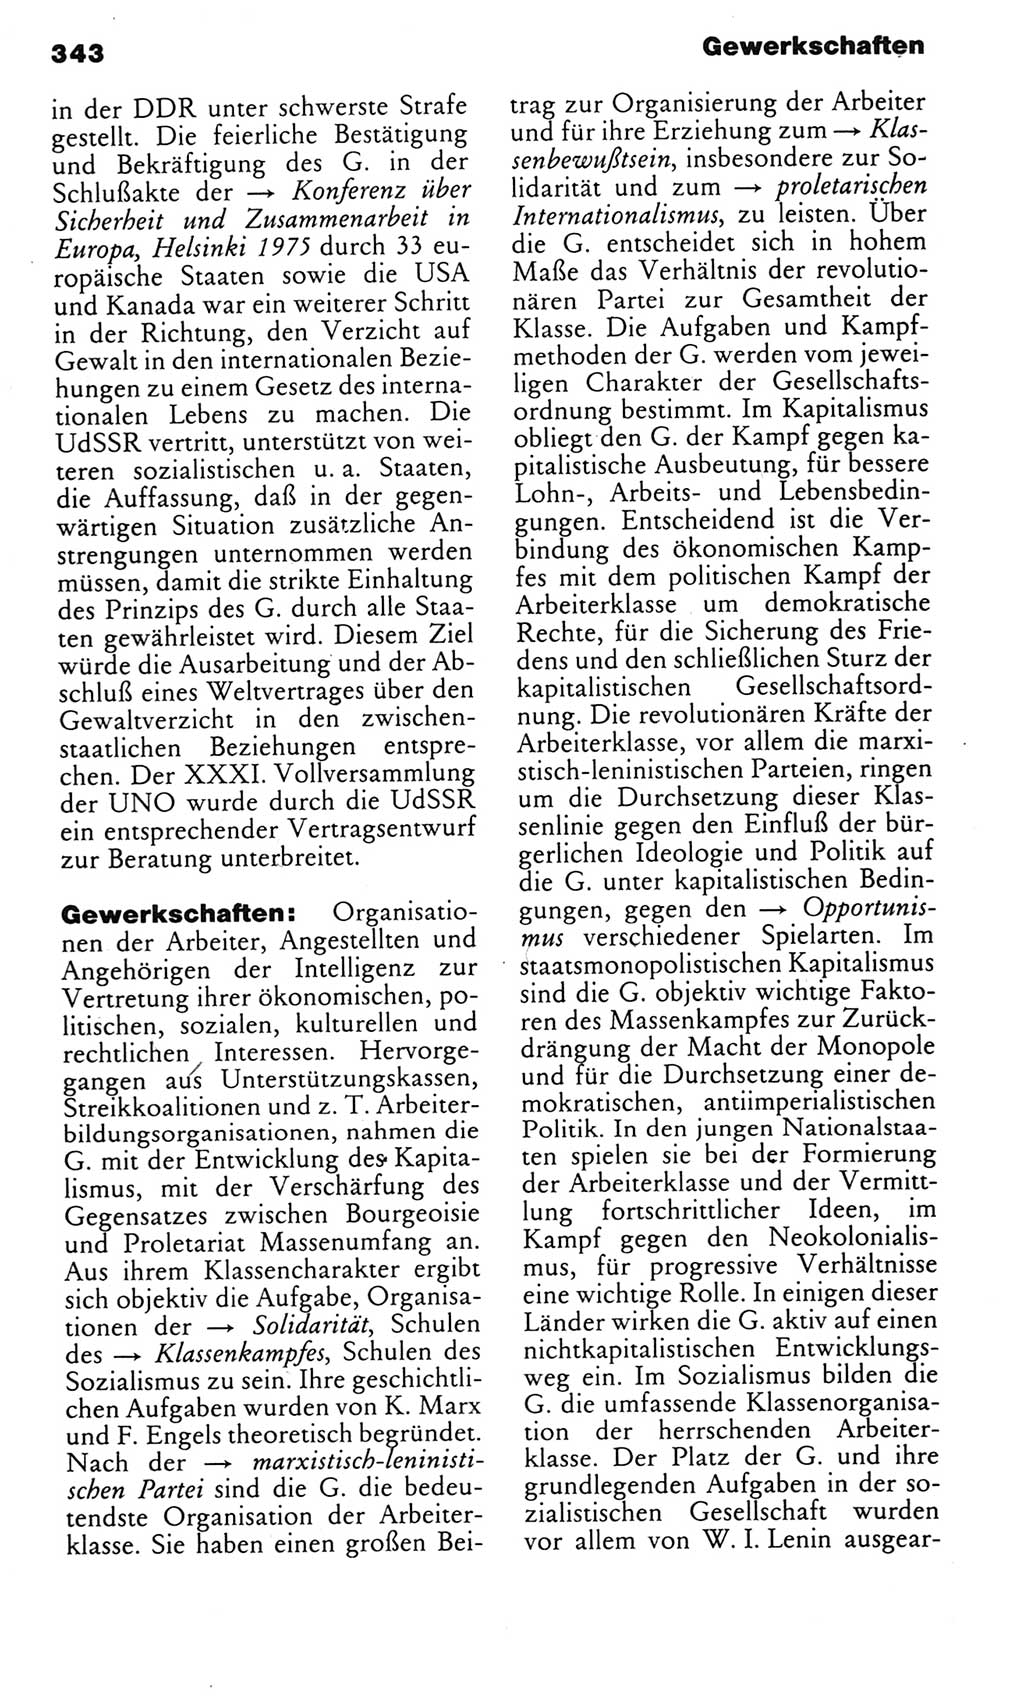 Kleines politisches Wörterbuch [Deutsche Demokratische Republik (DDR)] 1983, Seite 343 (Kl. pol. Wb. DDR 1983, S. 343)